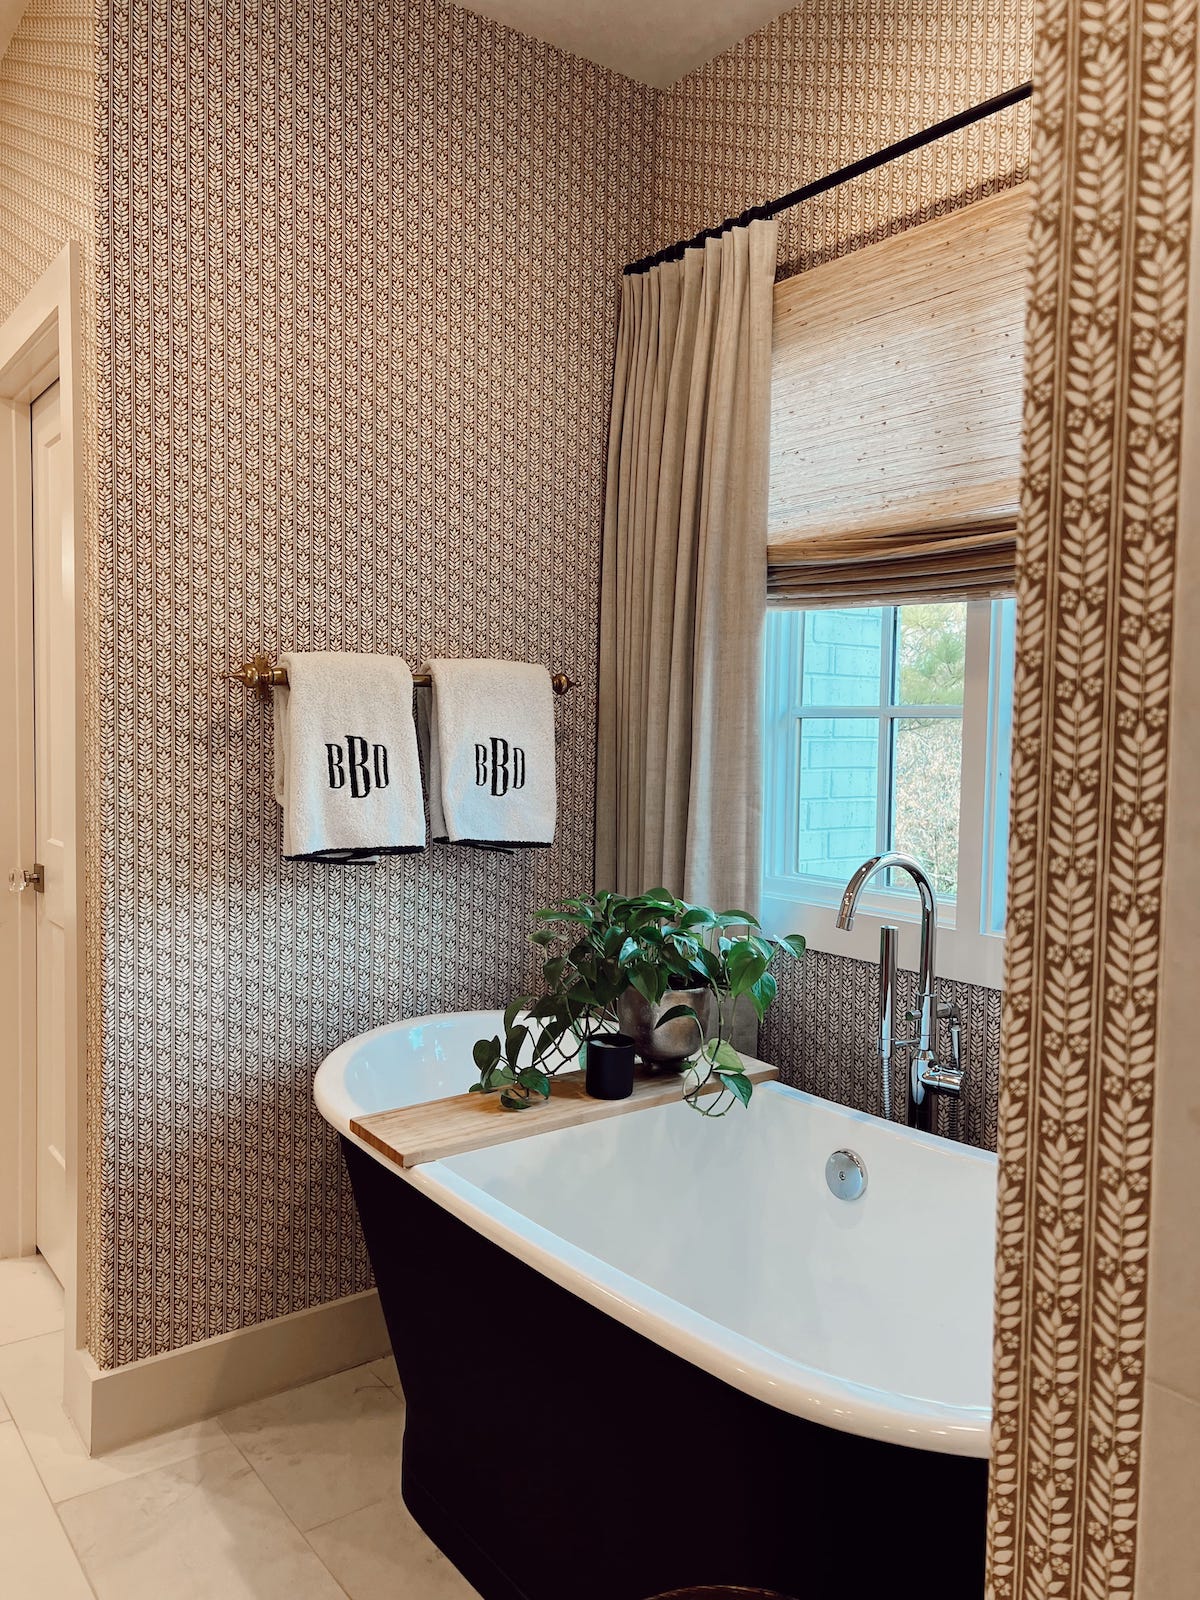 brighton butler bathroom with wallpaper update black tub Weezie monogrammed towels 